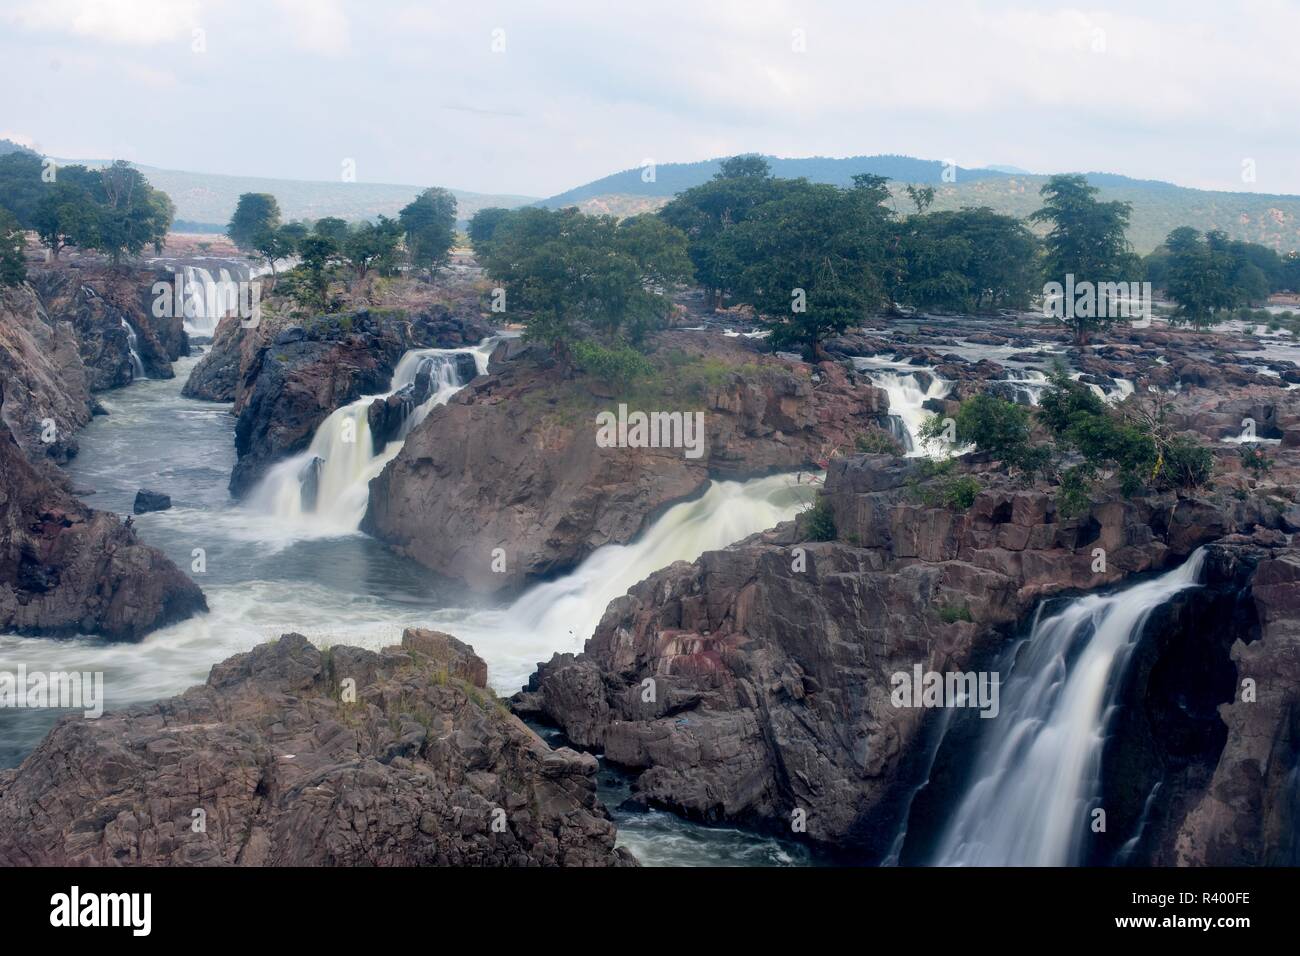 Hogenakkal Falls in Full Force Stock Photo